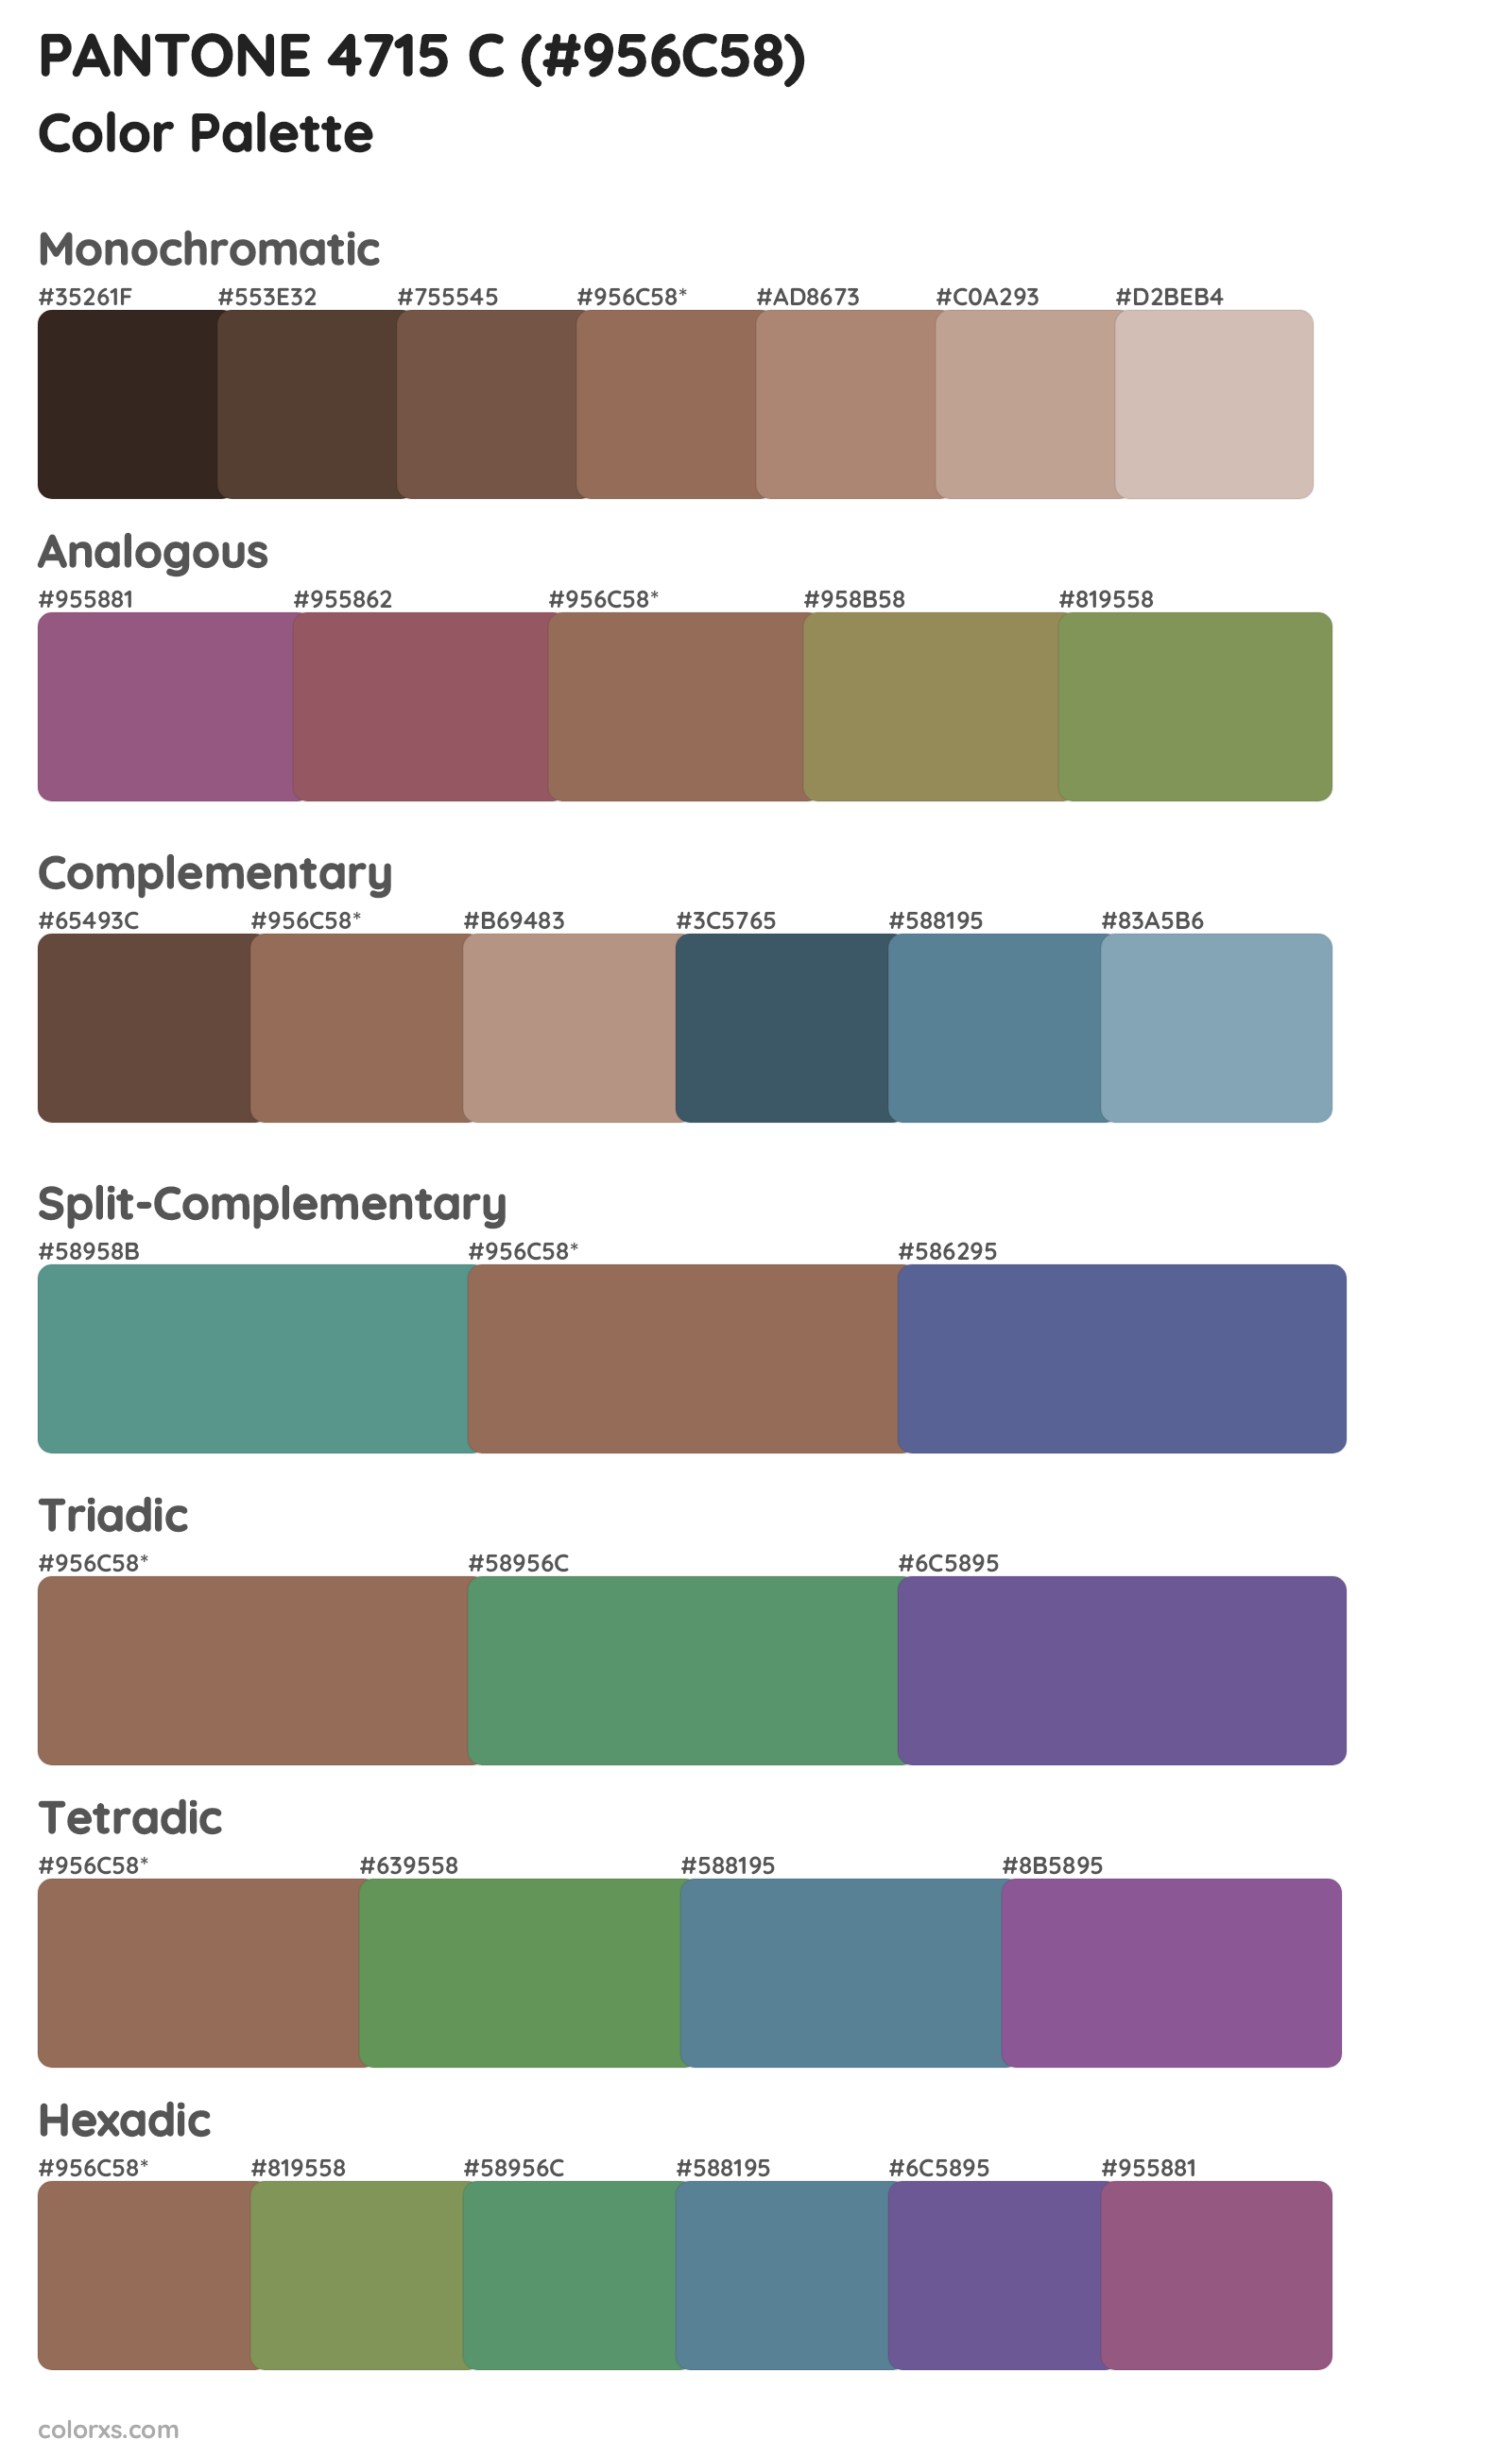 PANTONE 4715 C Color Scheme Palettes